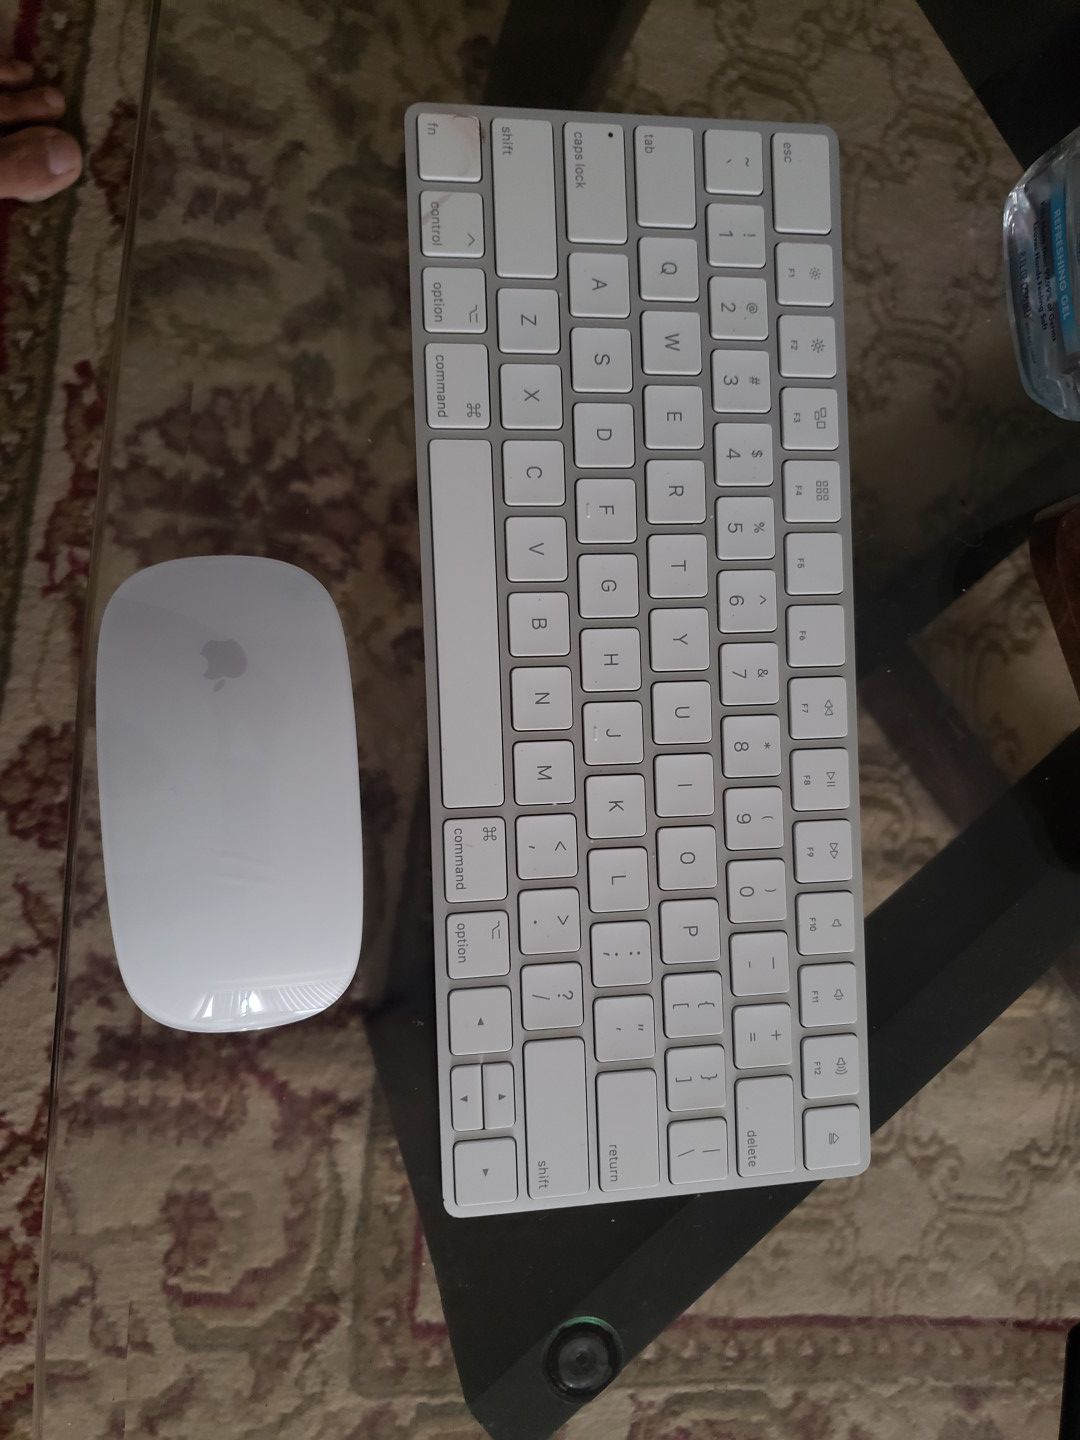 Apple Wireless Keyboard, Mouse